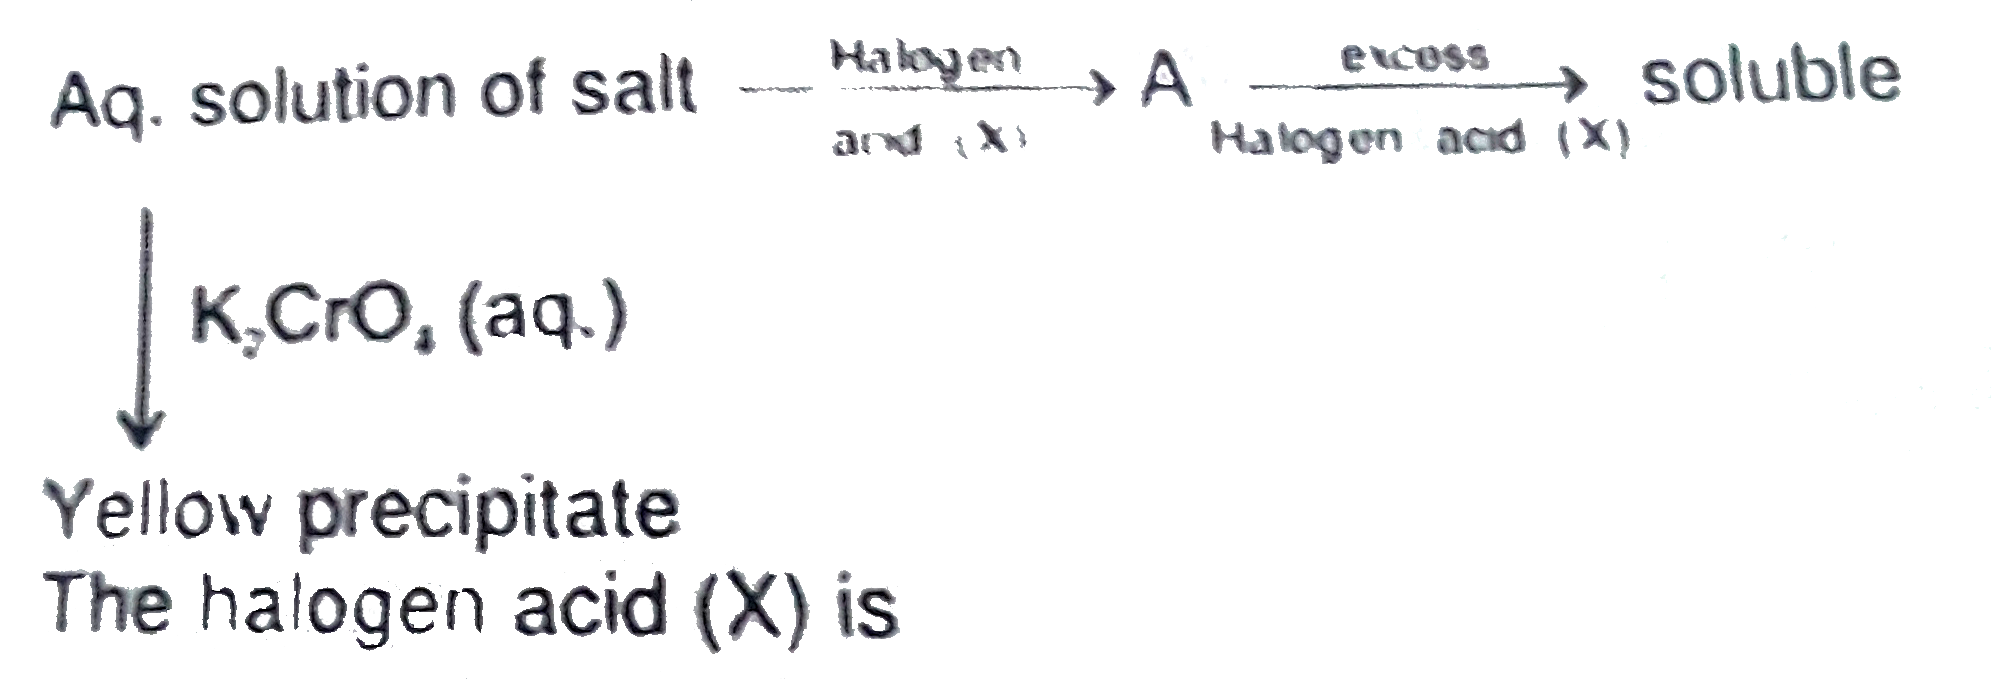 The halogen acid (X) is